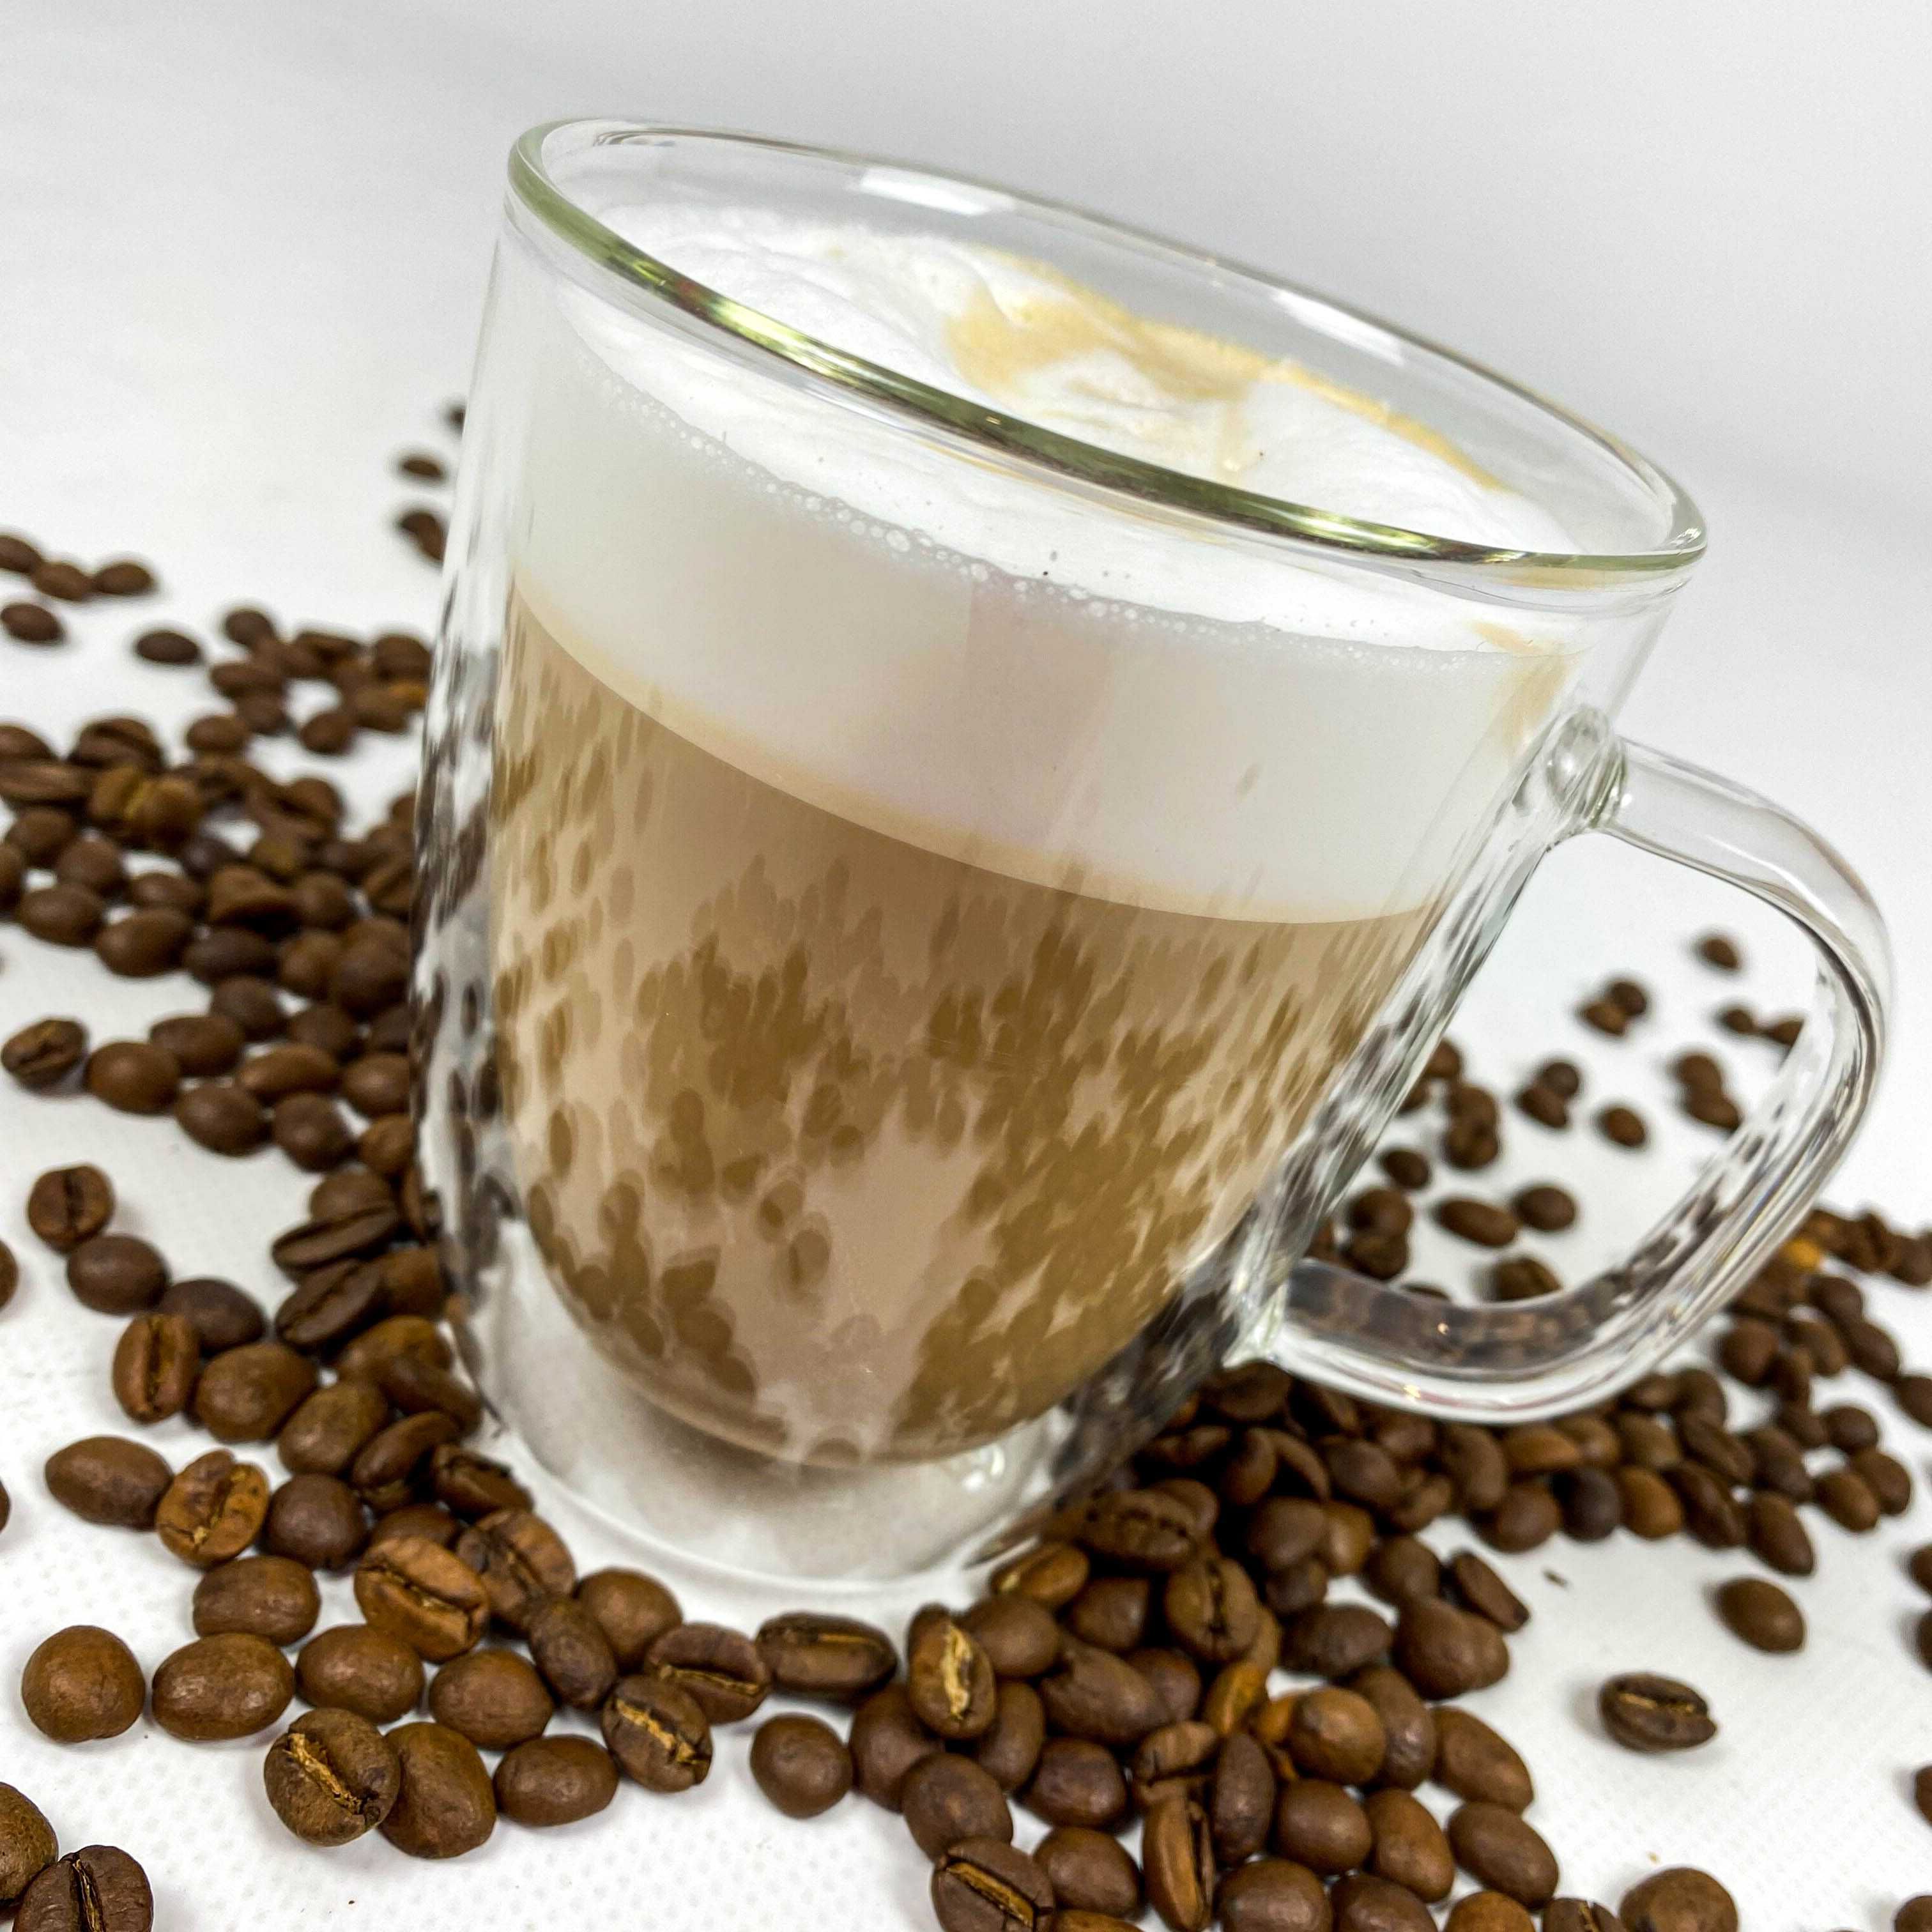 ХИТ ПРОДАЖ!! Блэнд кофейных зерен 75%25% по ЛУЧШЕЙ ЦЕНЕ! Кофе в зернах